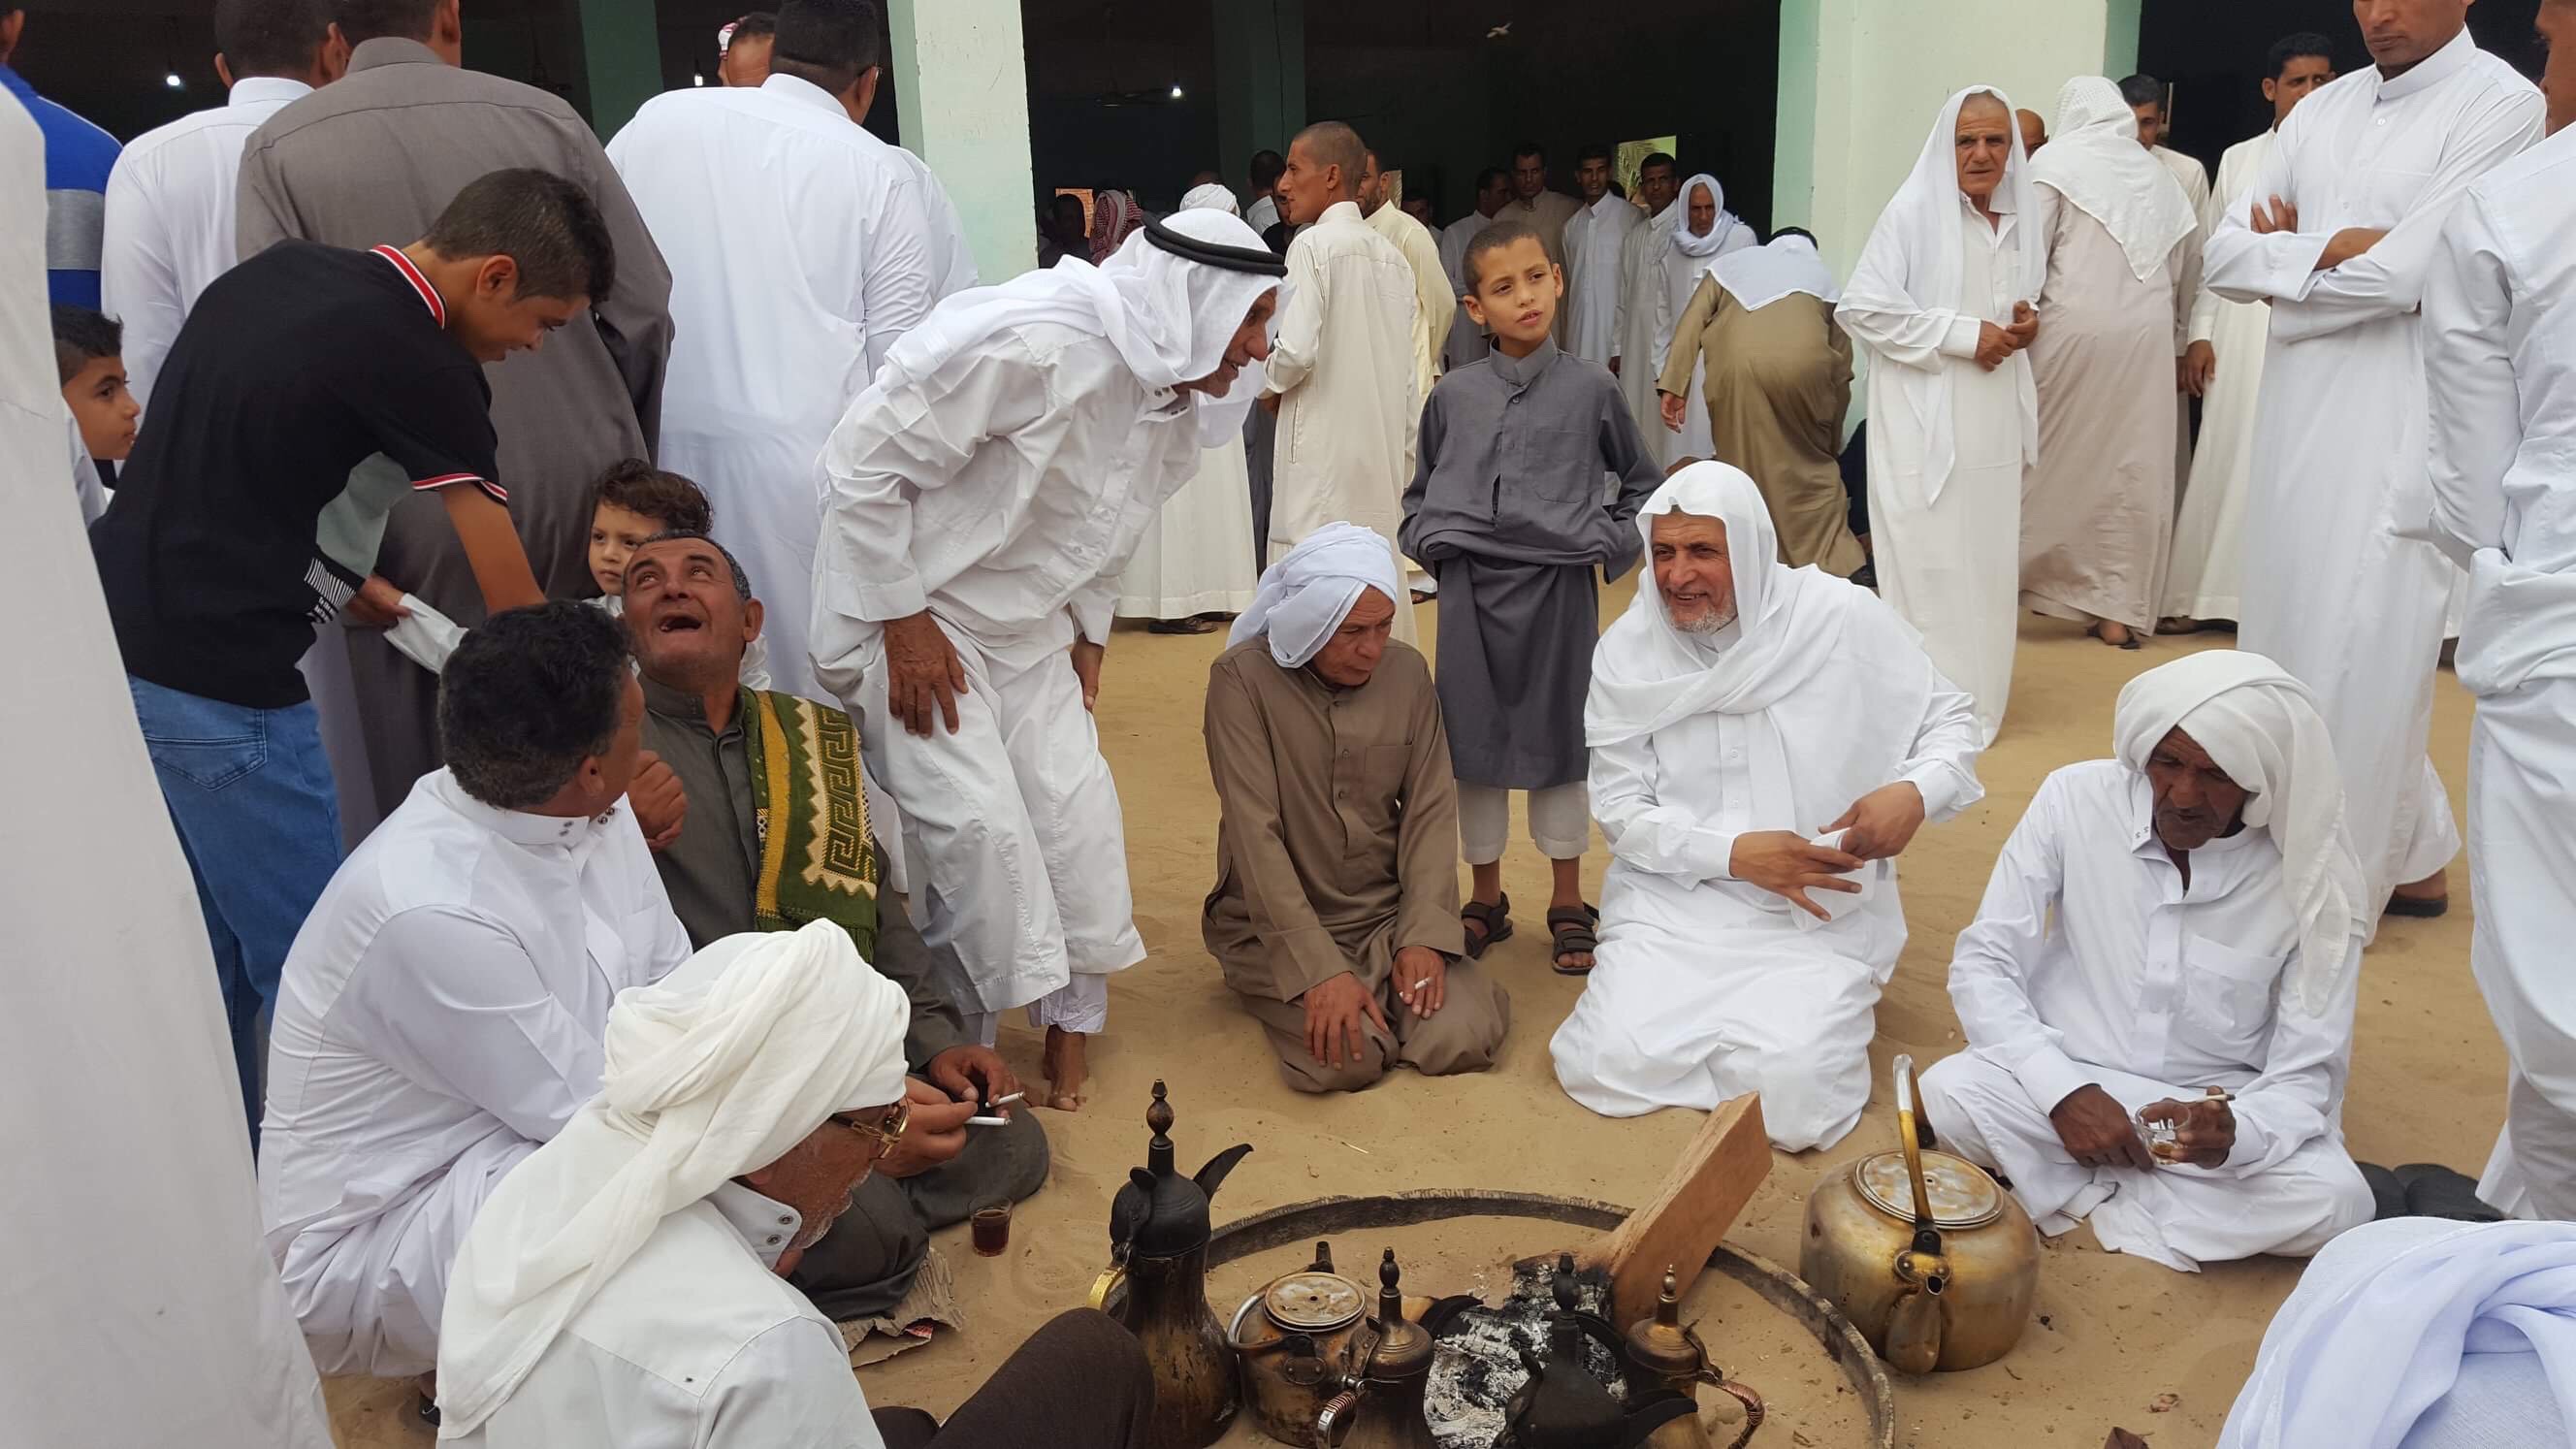 دواوين قبائل سيناء ملتقى يجمع الأقارب والأصدقاء فى احتفالات عيد الفطر (2)